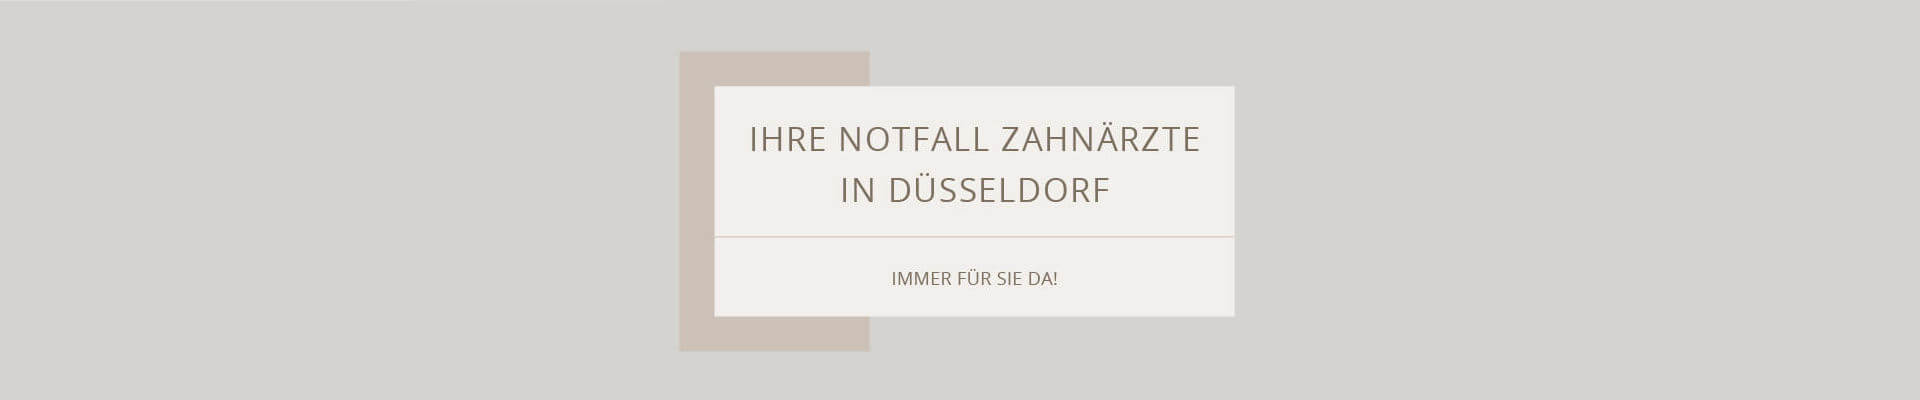 2020-notfall-zahnarzt_duesseldorf-d.jpg 